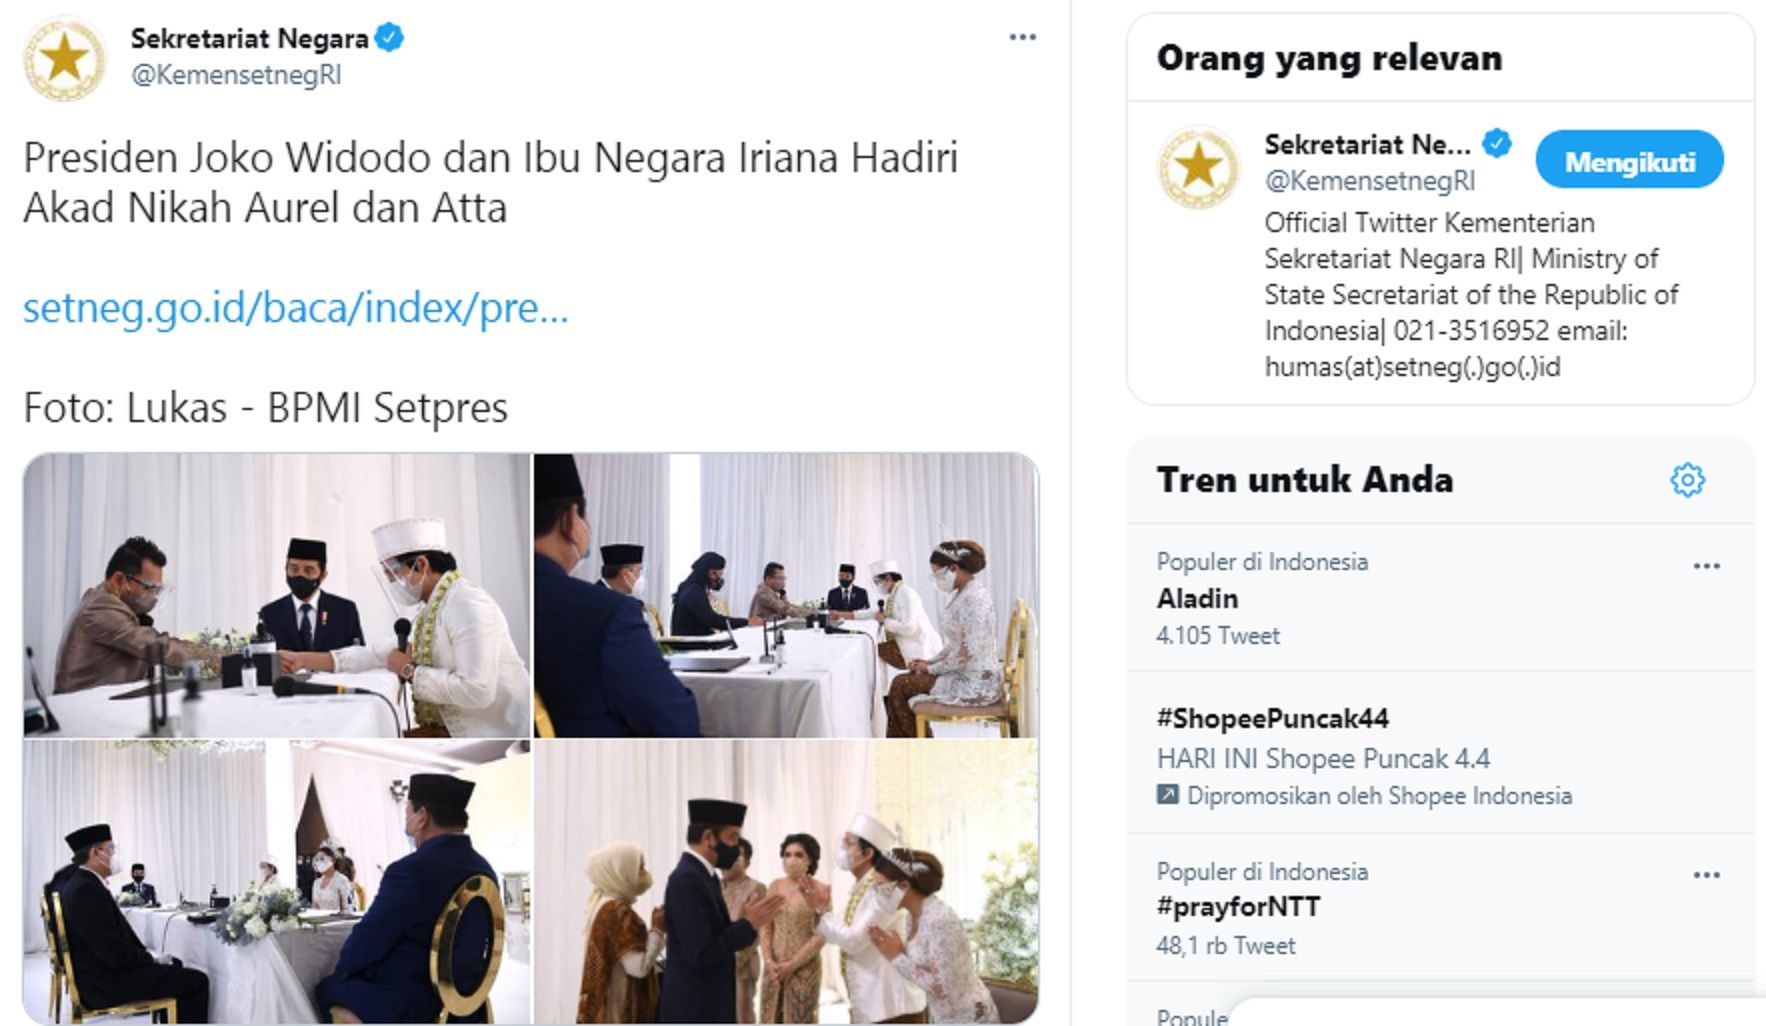 Warganet menyerbu akun twitter Sekretariat Negara atau @KemensetnegRI karena turut memposting prosesi pernikahan Youtuber Atta Halilintar dengan Aurel Hermansyah yang dihadiri Presiden Joko Widodo.